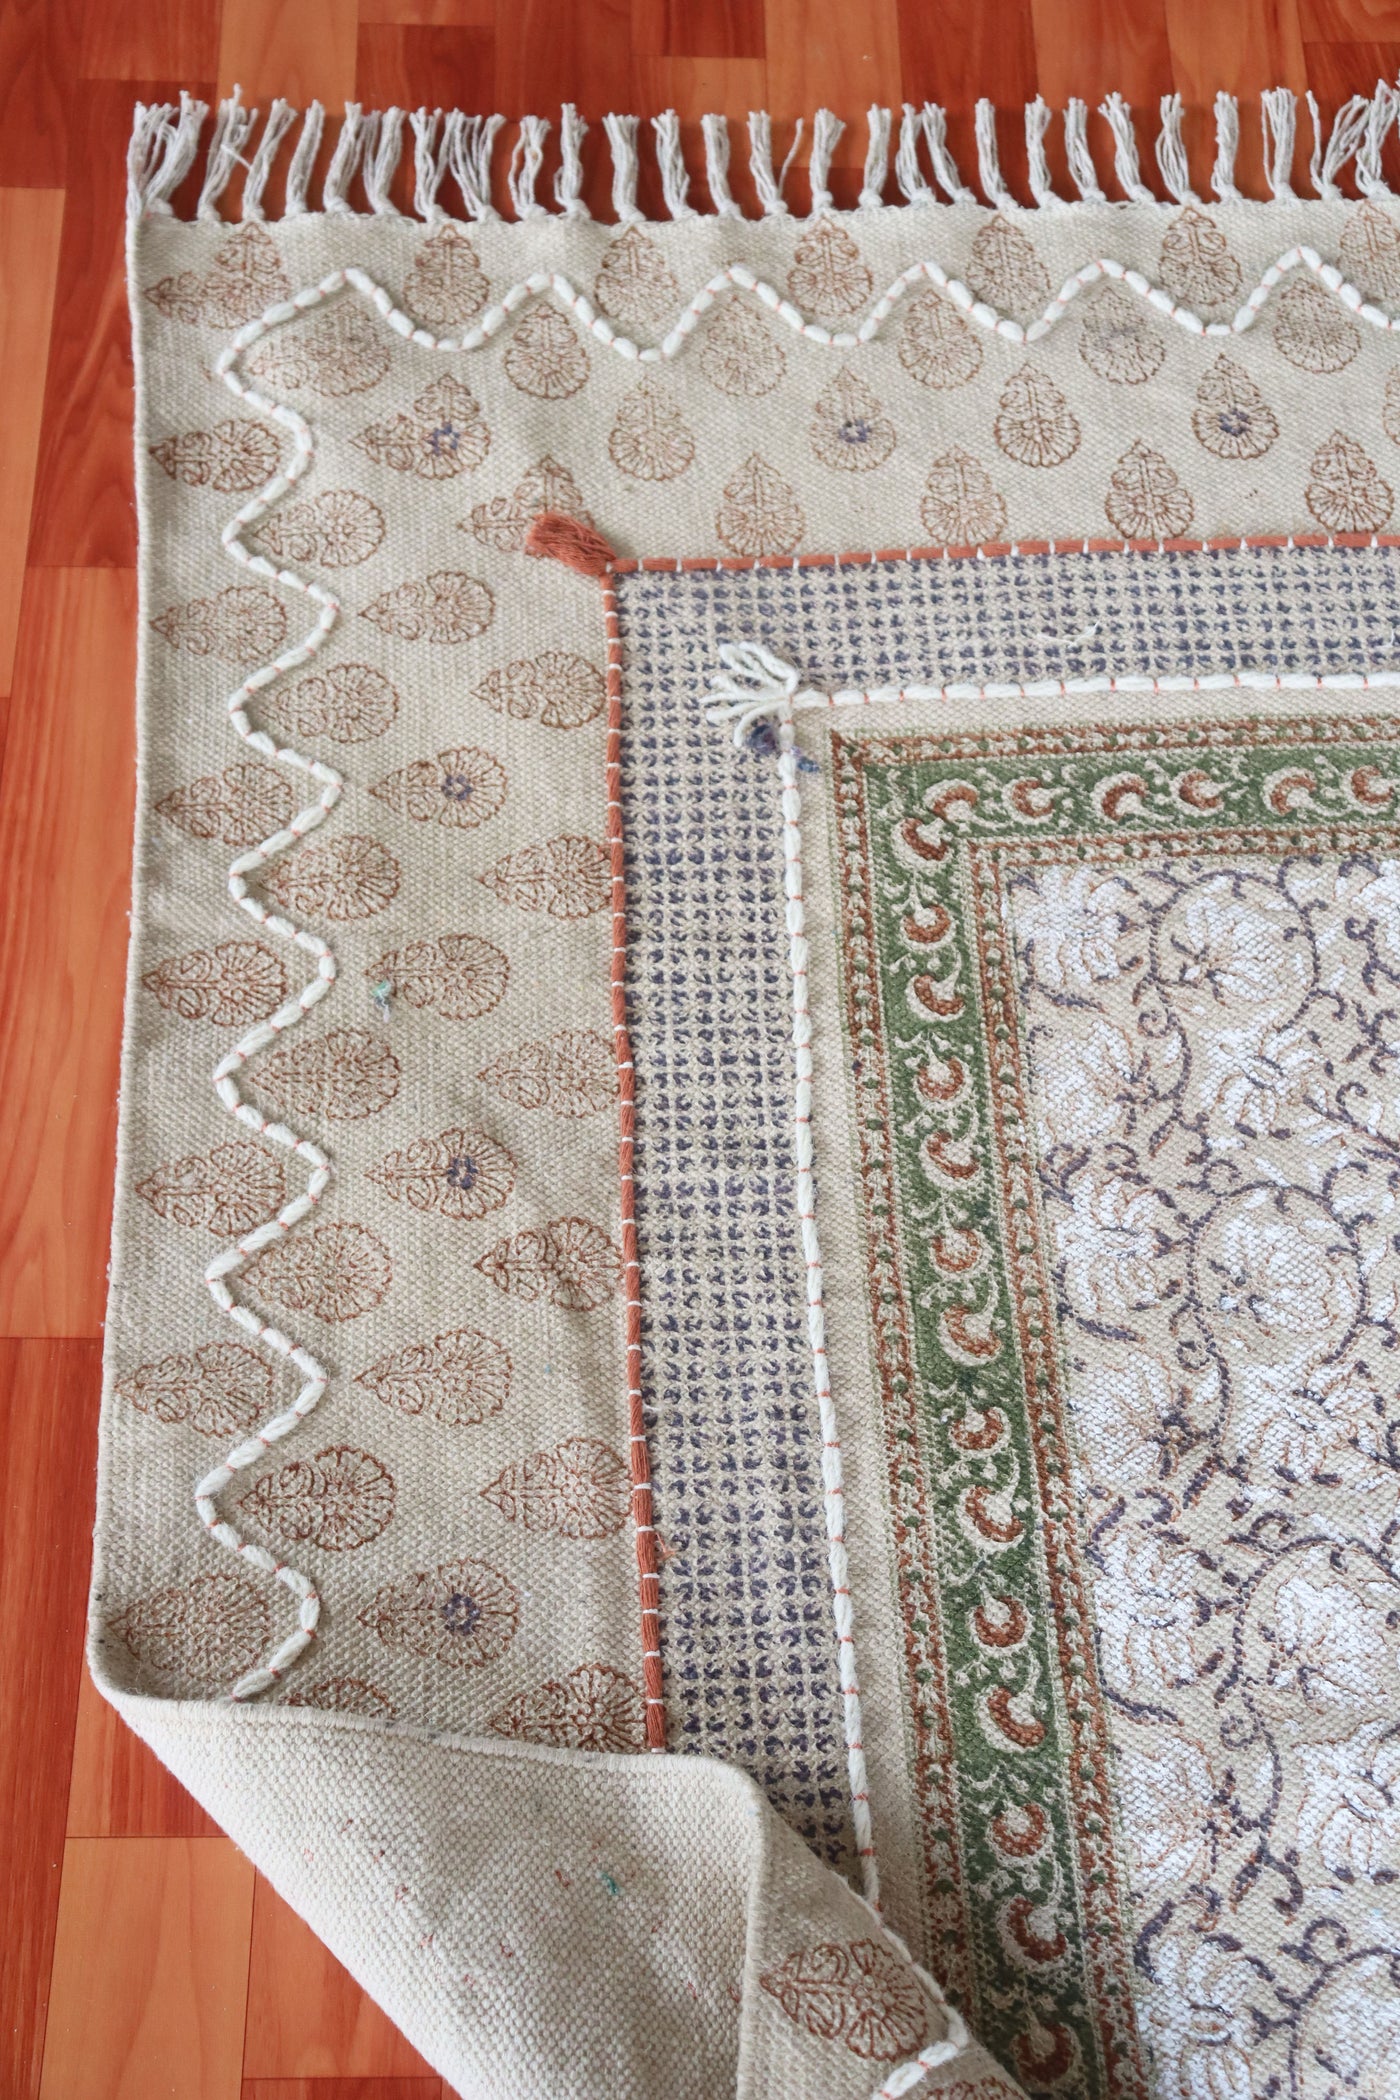 Cotton rug, Vintage rug, Bedroom rug, Block printed rug, dhurrie carpet,  3x5, 4x6, 5x8 Feet